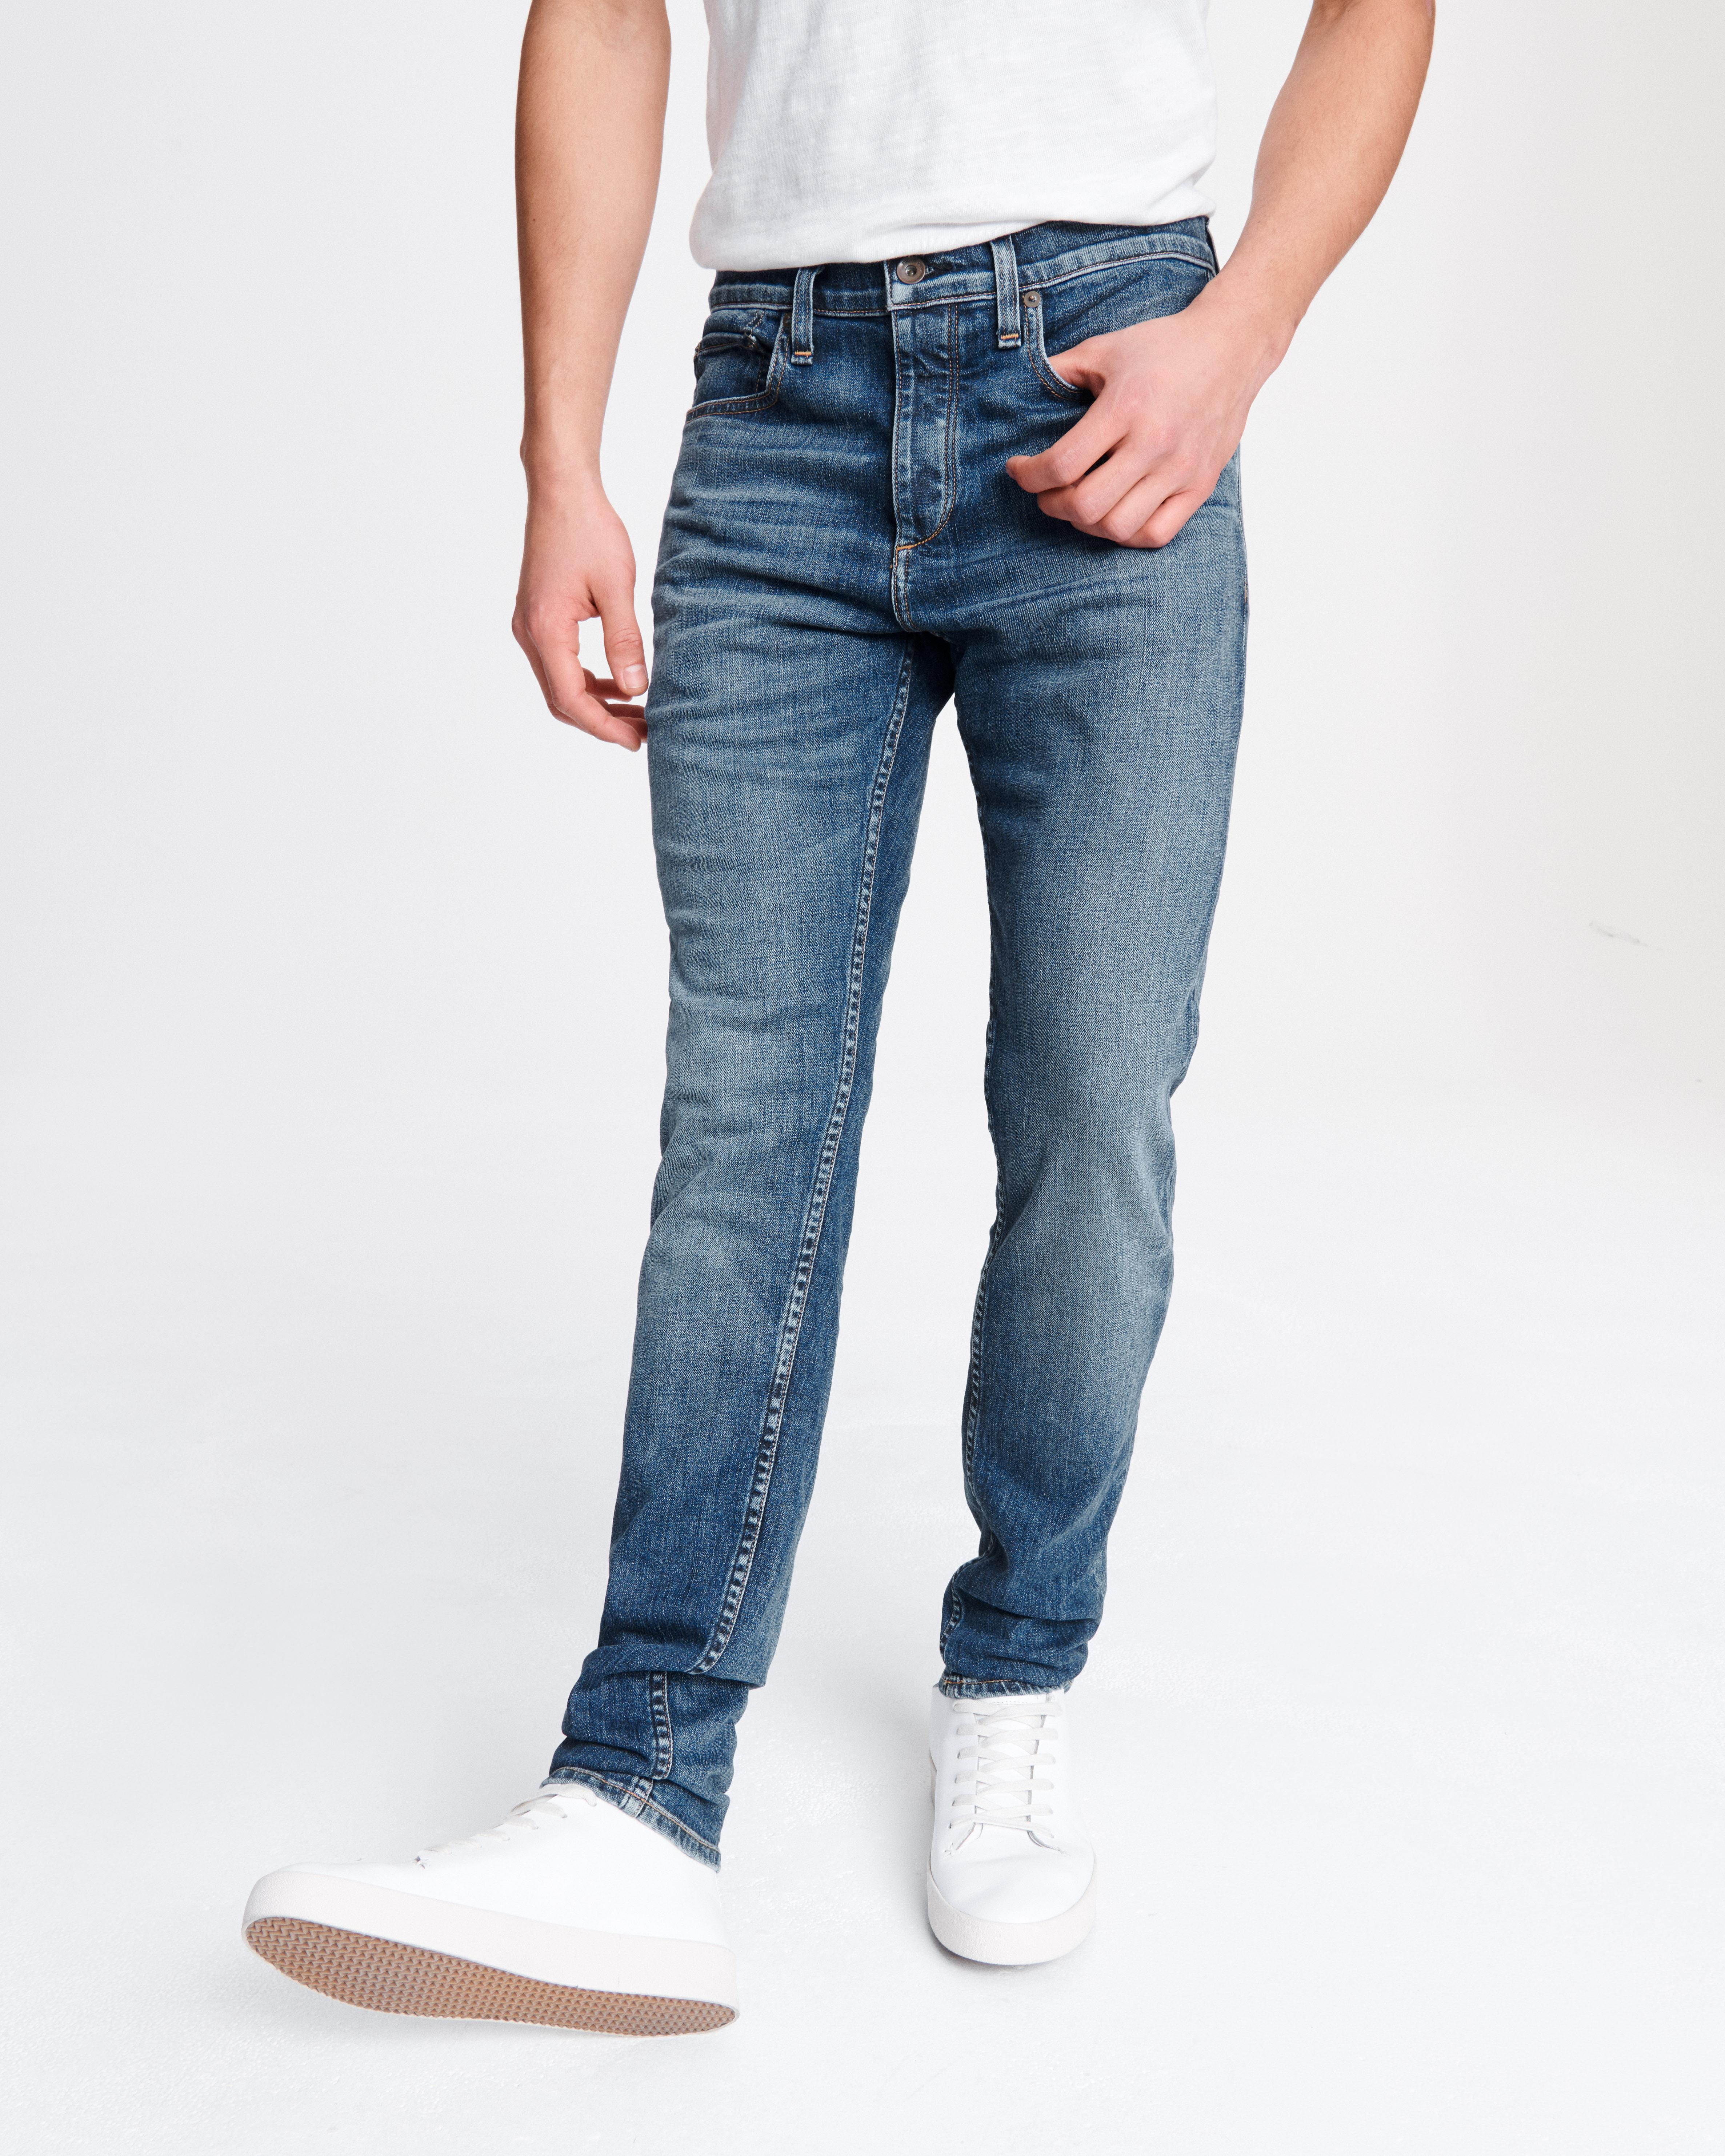 Fit 1 Slim Jeans for Men in Throop